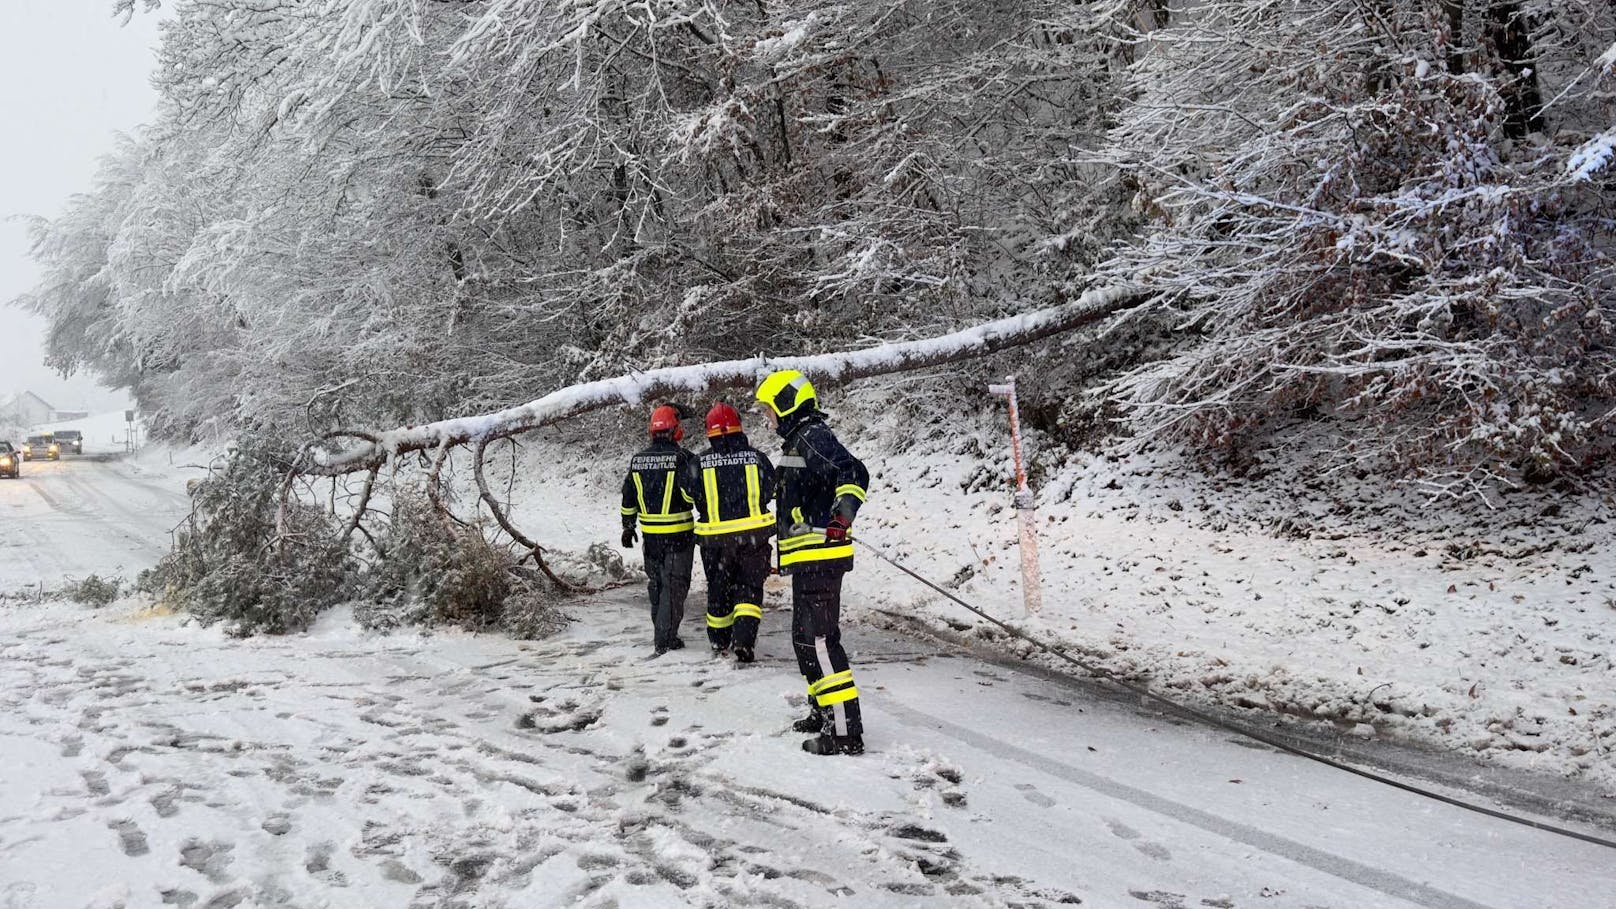 Zahlreiche Einsätze wegen umgestürzter Bäume und hängengebliebenen Fahrzeugen beschäftigen die Feuerwehren in Niederösterreich. Unteranderem auch die Feuerwehr Neustadtl im Bezirk Amstetten. Unzählige Einsätze beschäftigen auch diese unteranderem auf der L91.